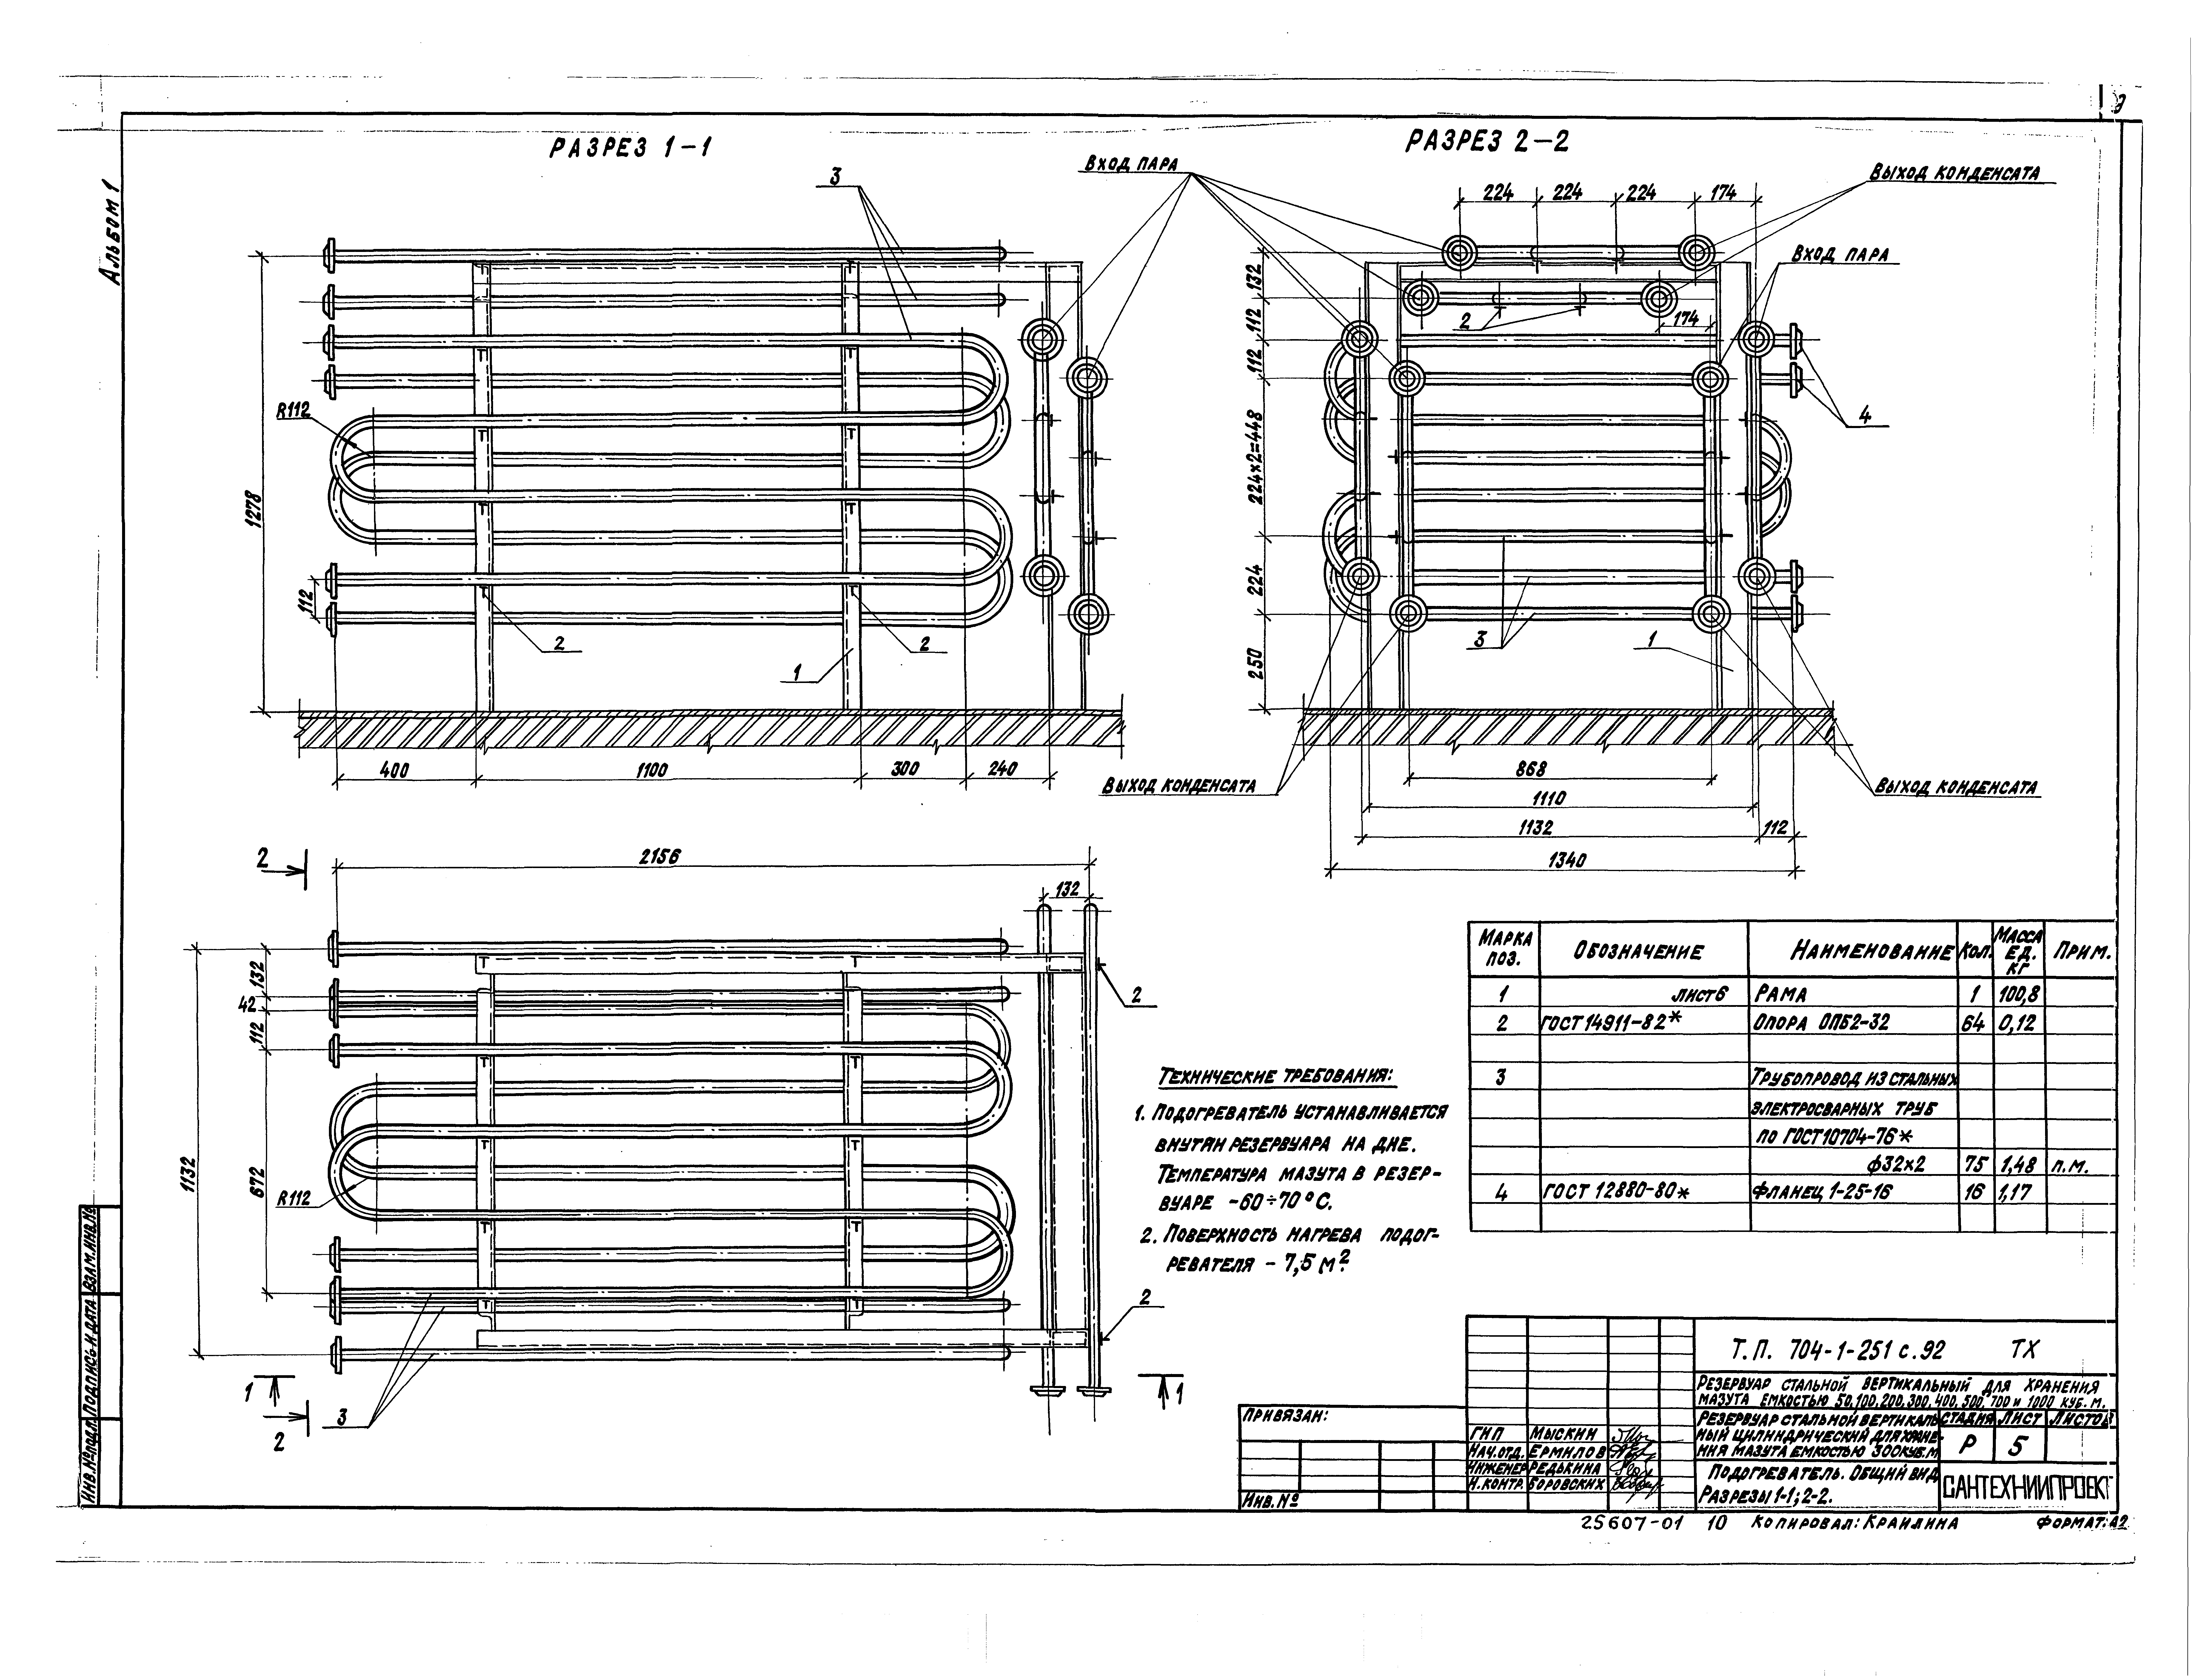 Типовой проект 704-1-251с.92